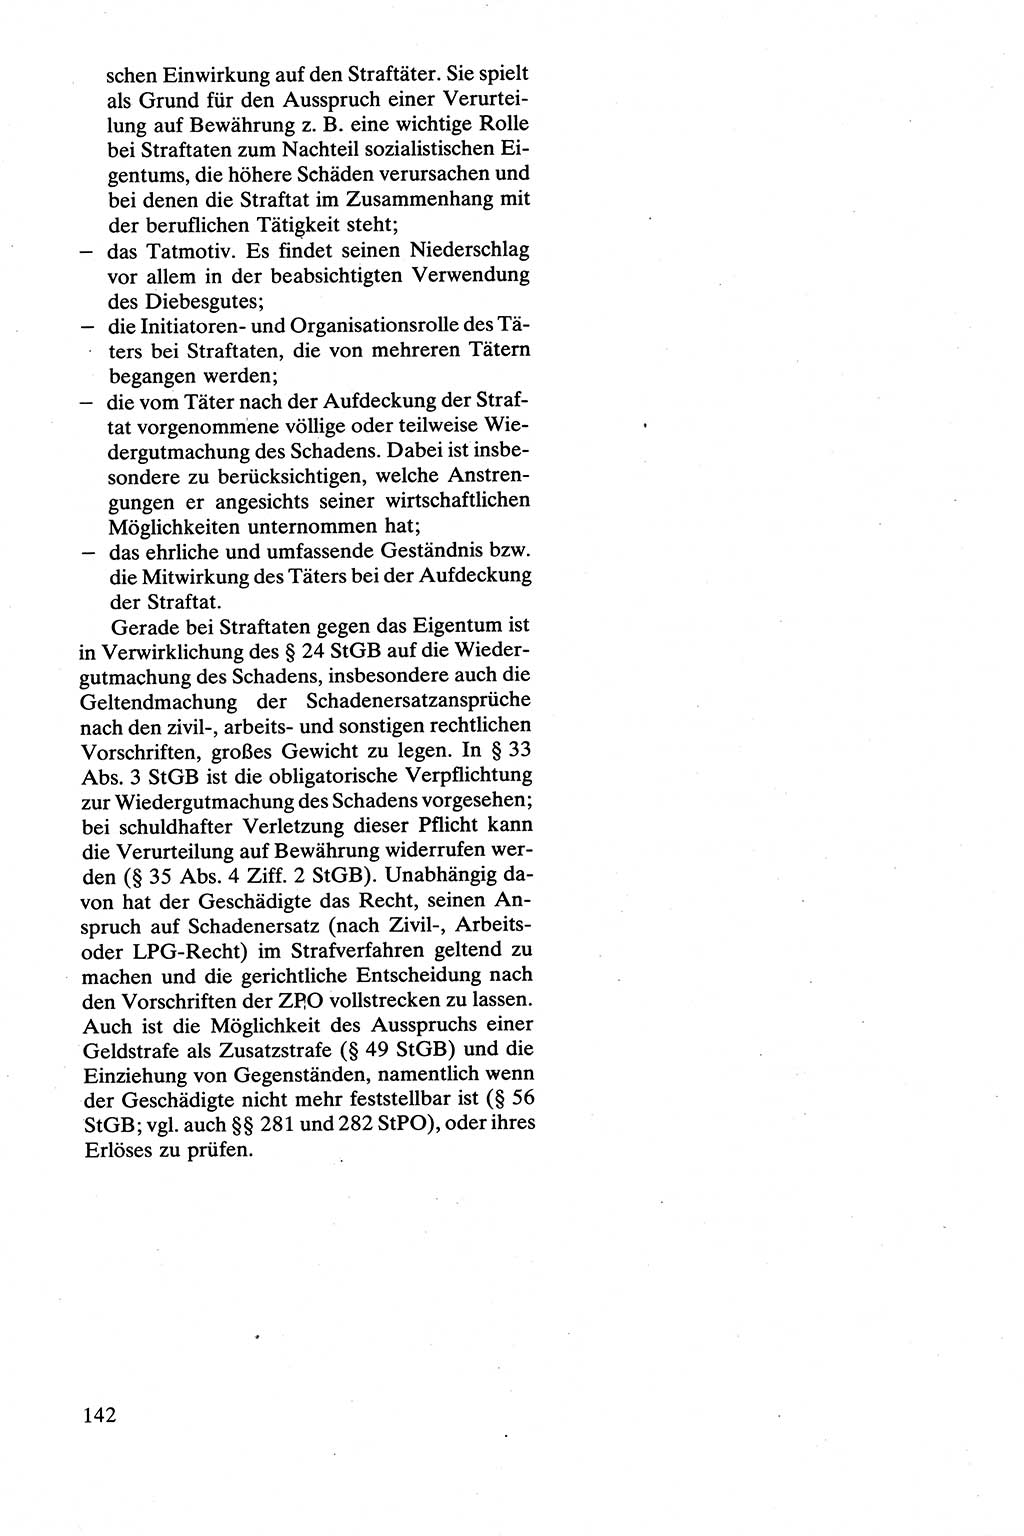 Strafrecht [Deutsche Demokratische Republik (DDR)], Besonderer Teil, Lehrbuch 1981, Seite 142 (Strafr. DDR BT Lb. 1981, S. 142)